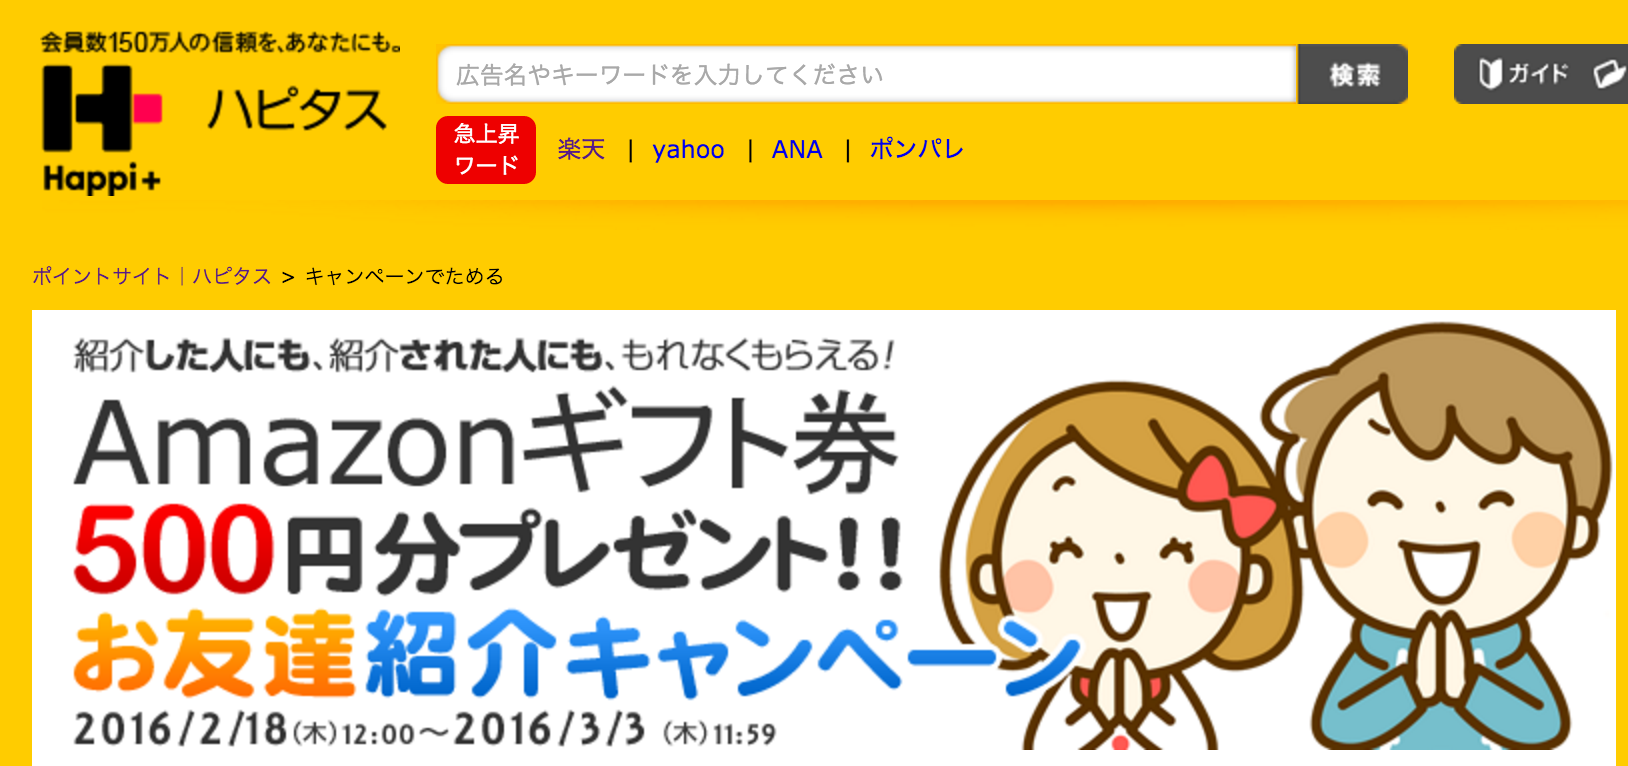 ハピタス登録でAmazonギフト券500円分獲得!